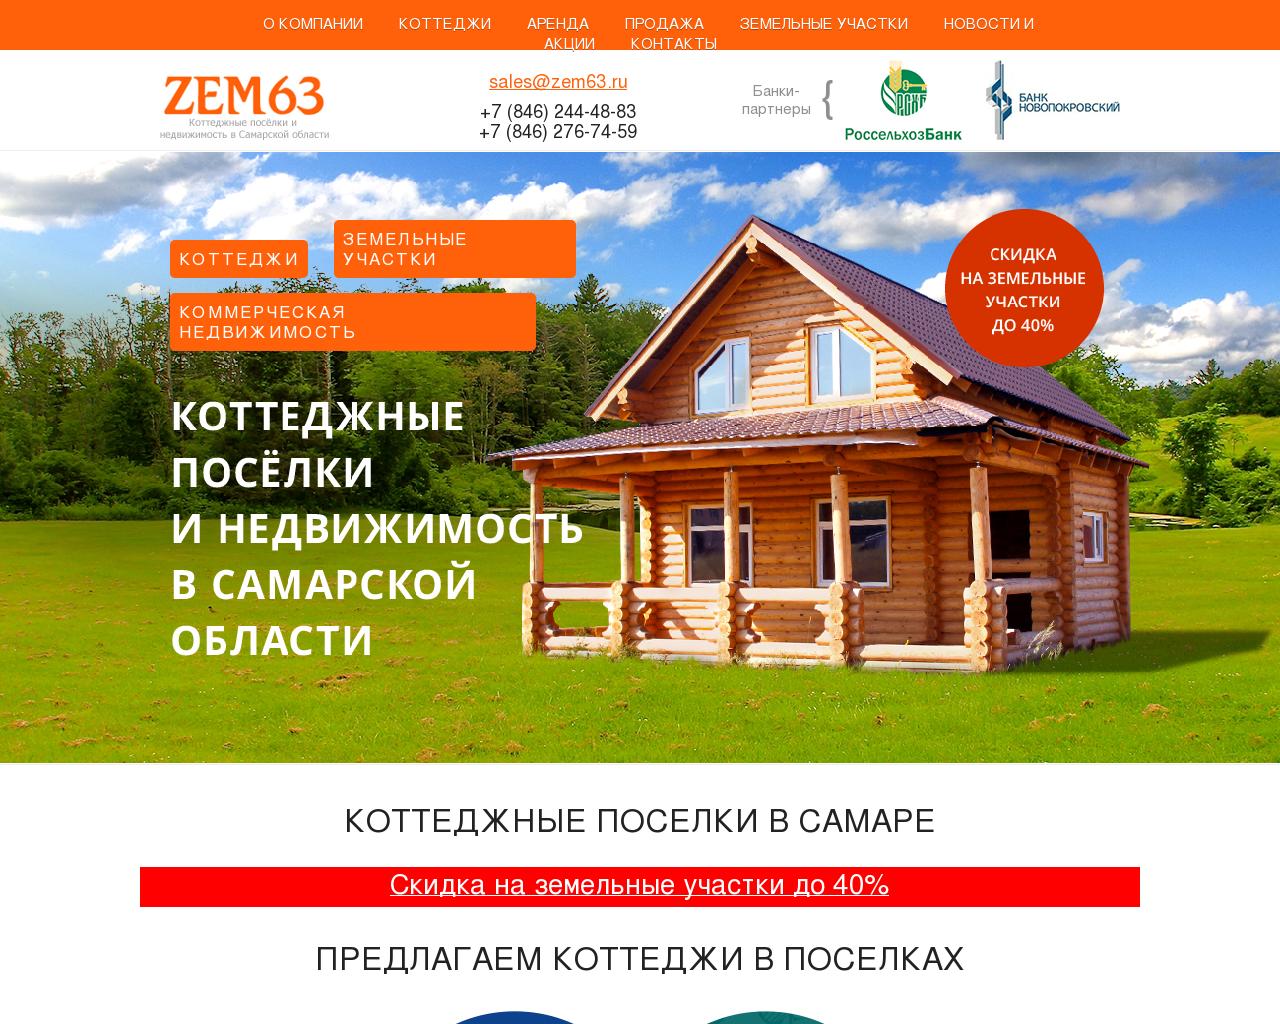 Изображение сайта zem63.ru в разрешении 1280x1024